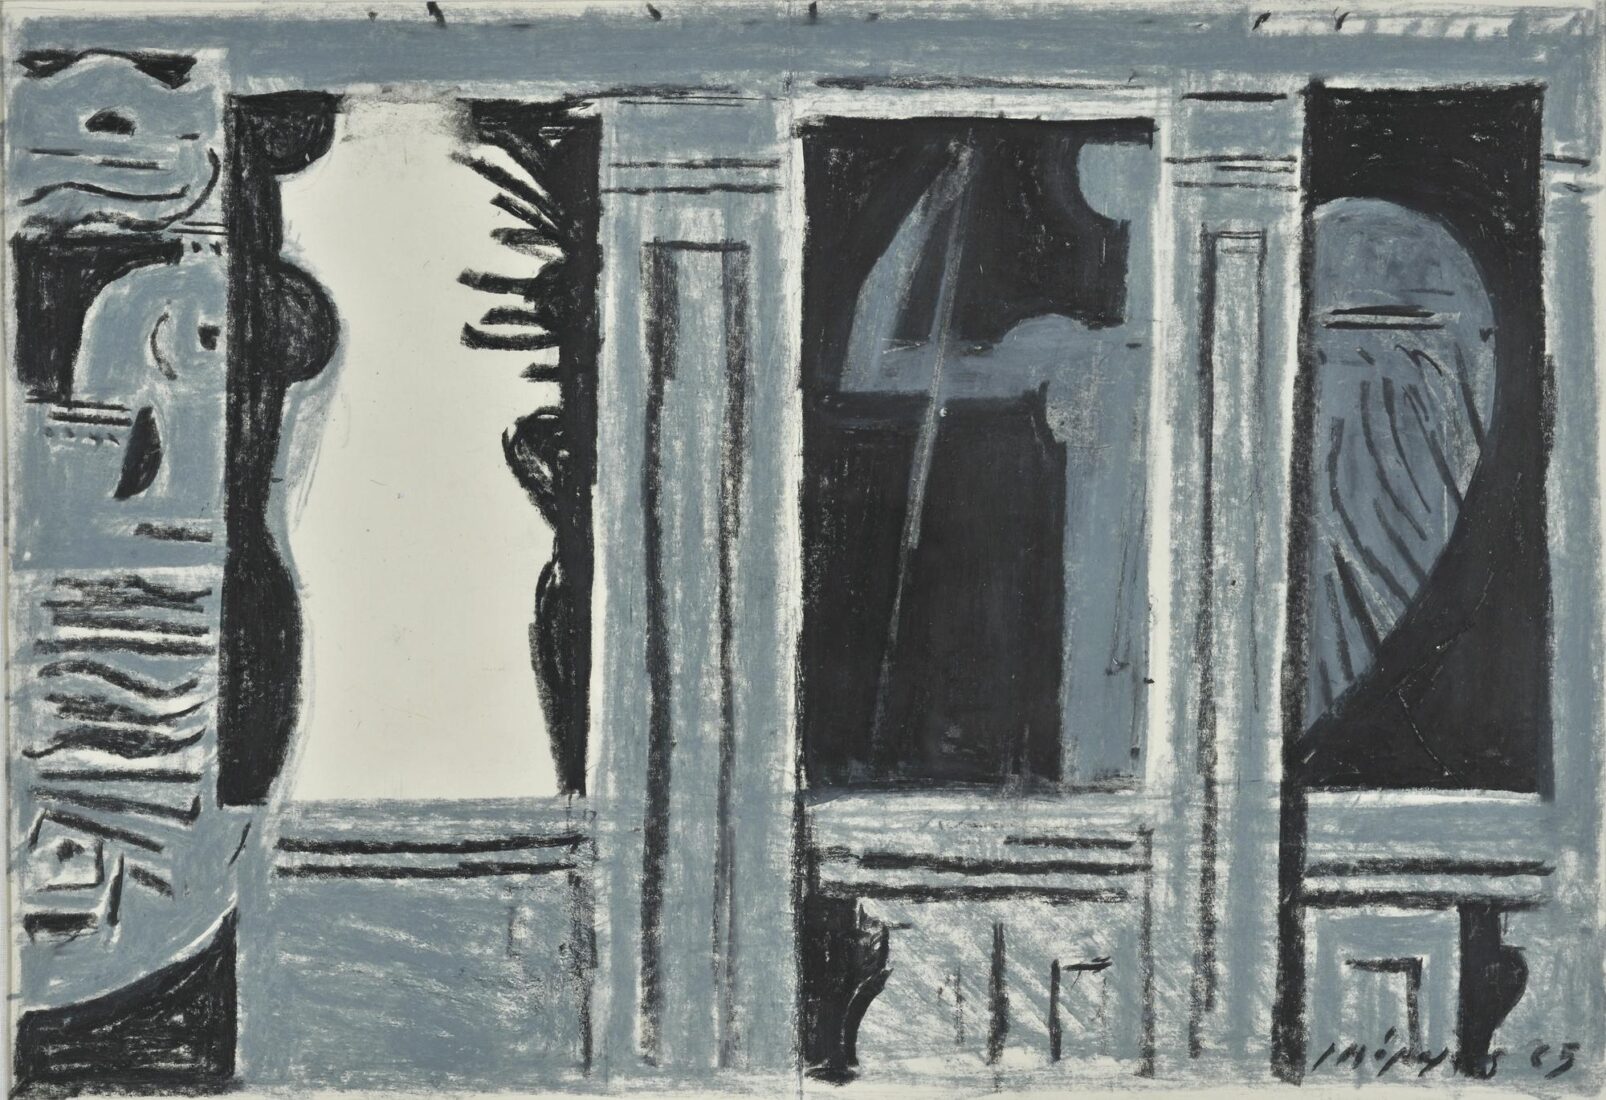 Ζωγραφική σύνθεση-σχόλιο για τη συλλογή Ποιήματα του Γιώργου Σεφέρη (εκδόσεις Ίκαρος, 1965) - Μόραλης Γιάννης